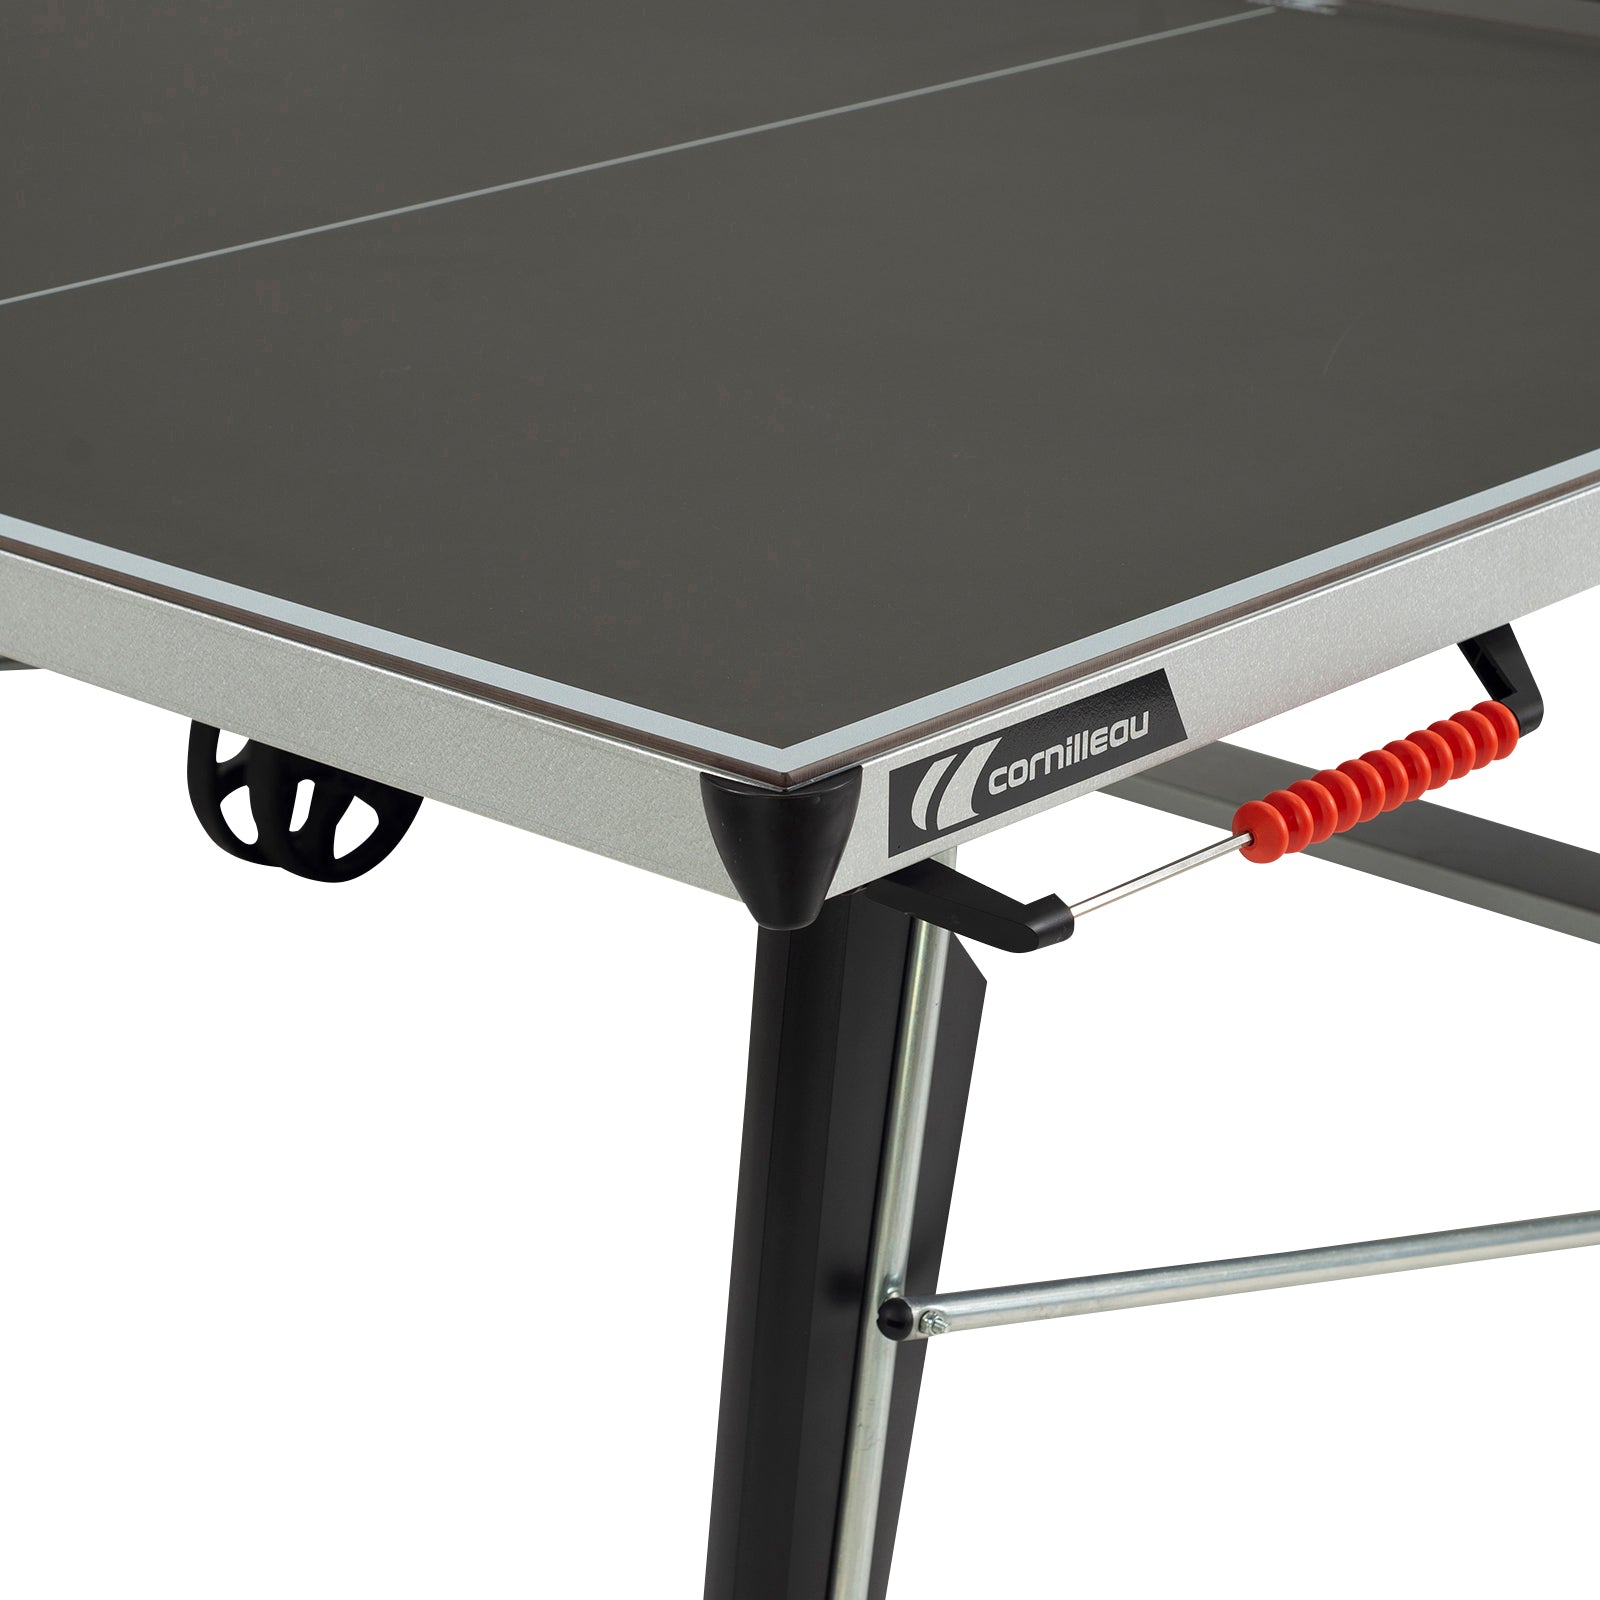 Cornilleau Sport 500X Outdoor Rollaway Table Tennis